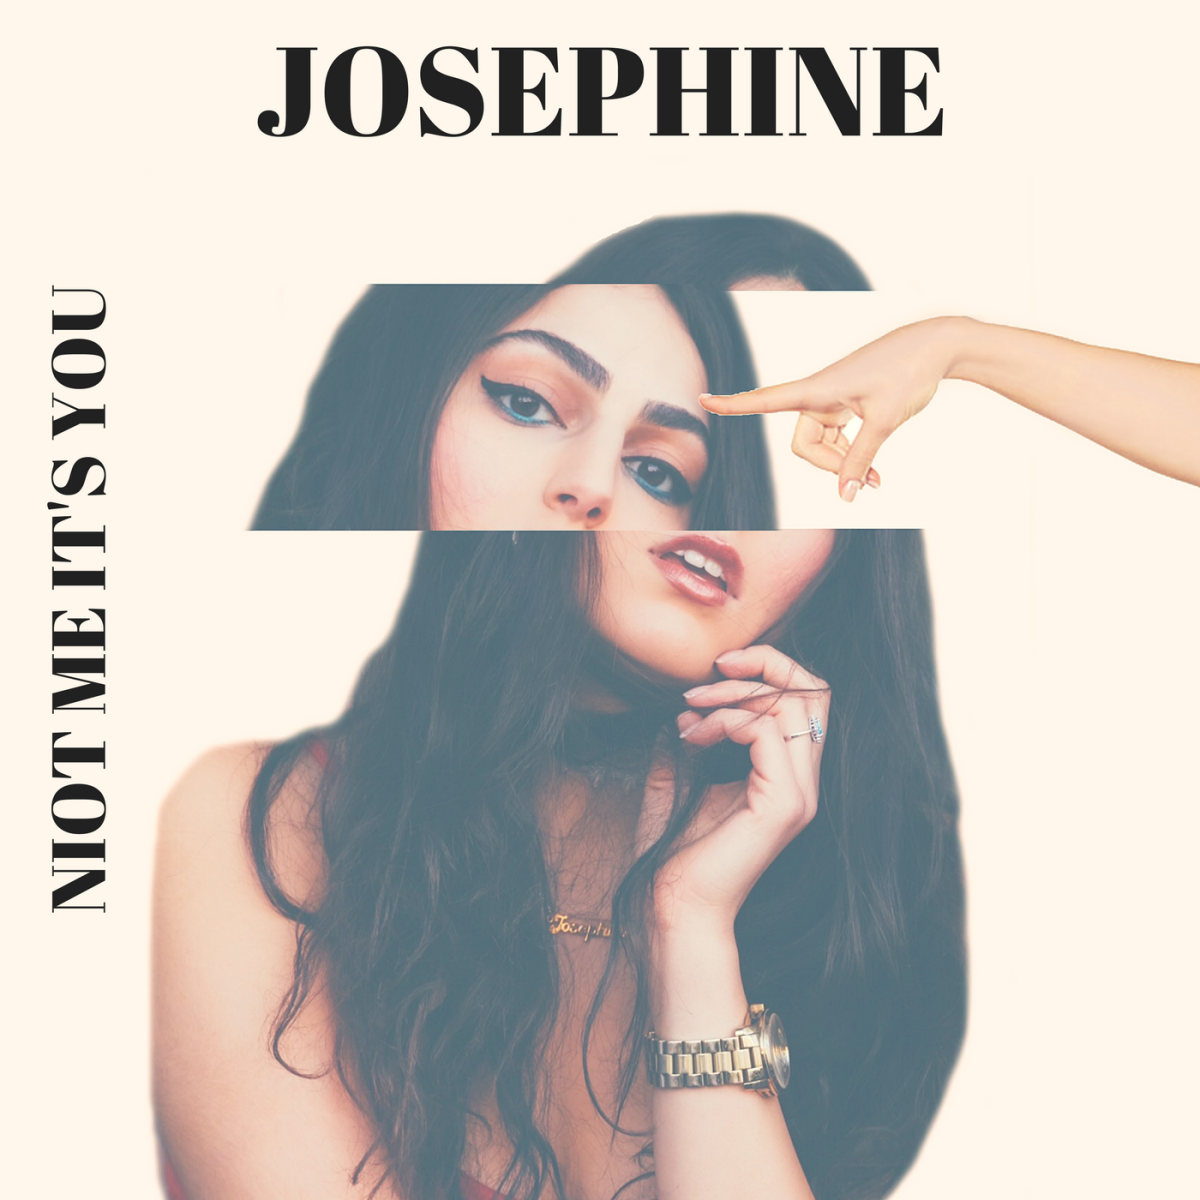 Josephine - Not Me It's You